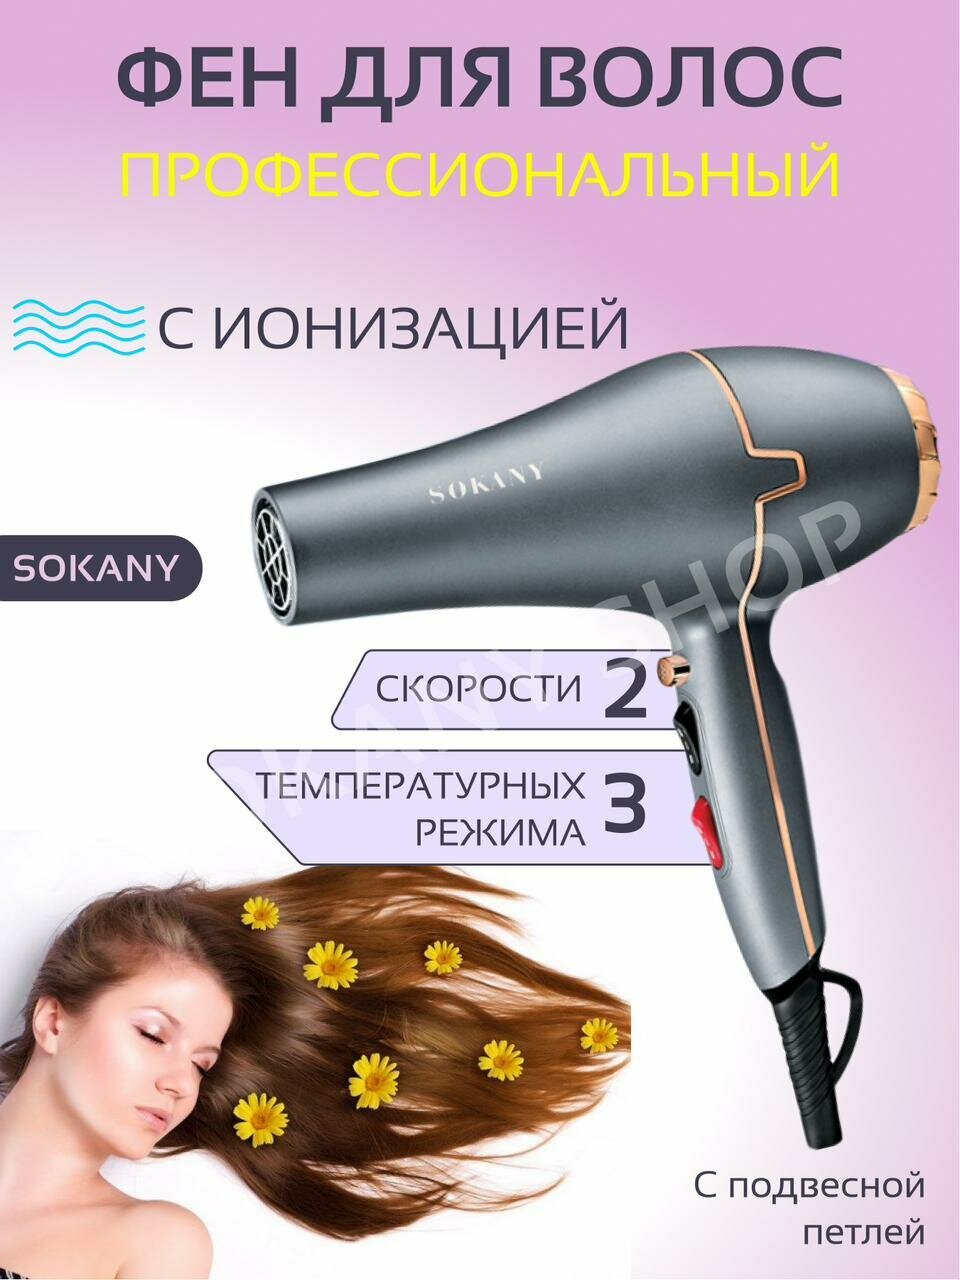 Супермощный фен для волос BE BEAUTIFUL/Профессиональный фен Sokany SK-8807 / Мощность 2200 Вт с эффектом быстрой сушки